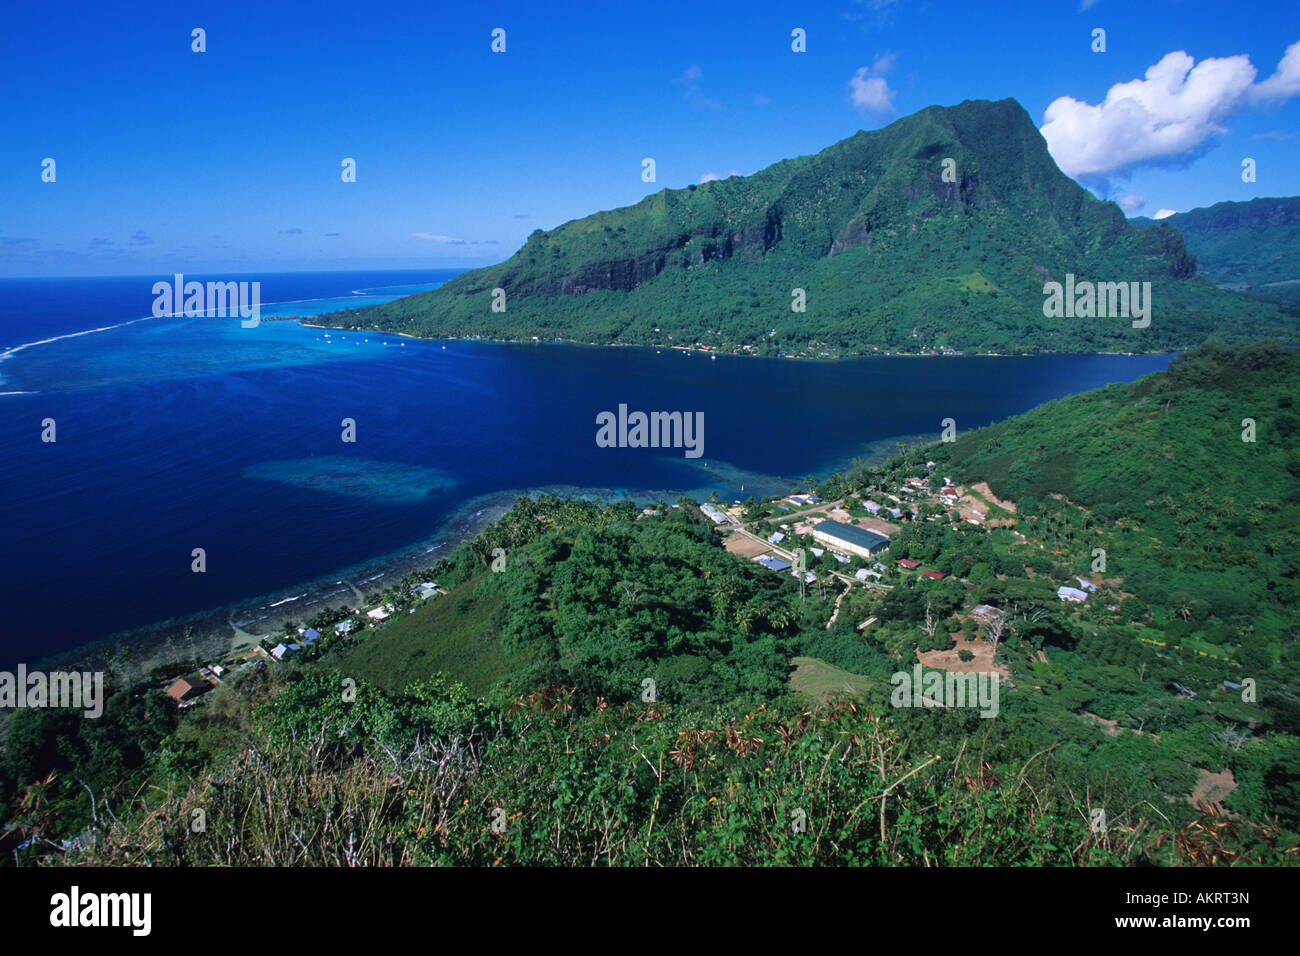 Francia, Polinesia francese, la società arcipelago, isole Windward, Moorea, baia Opunohu Foto Stock